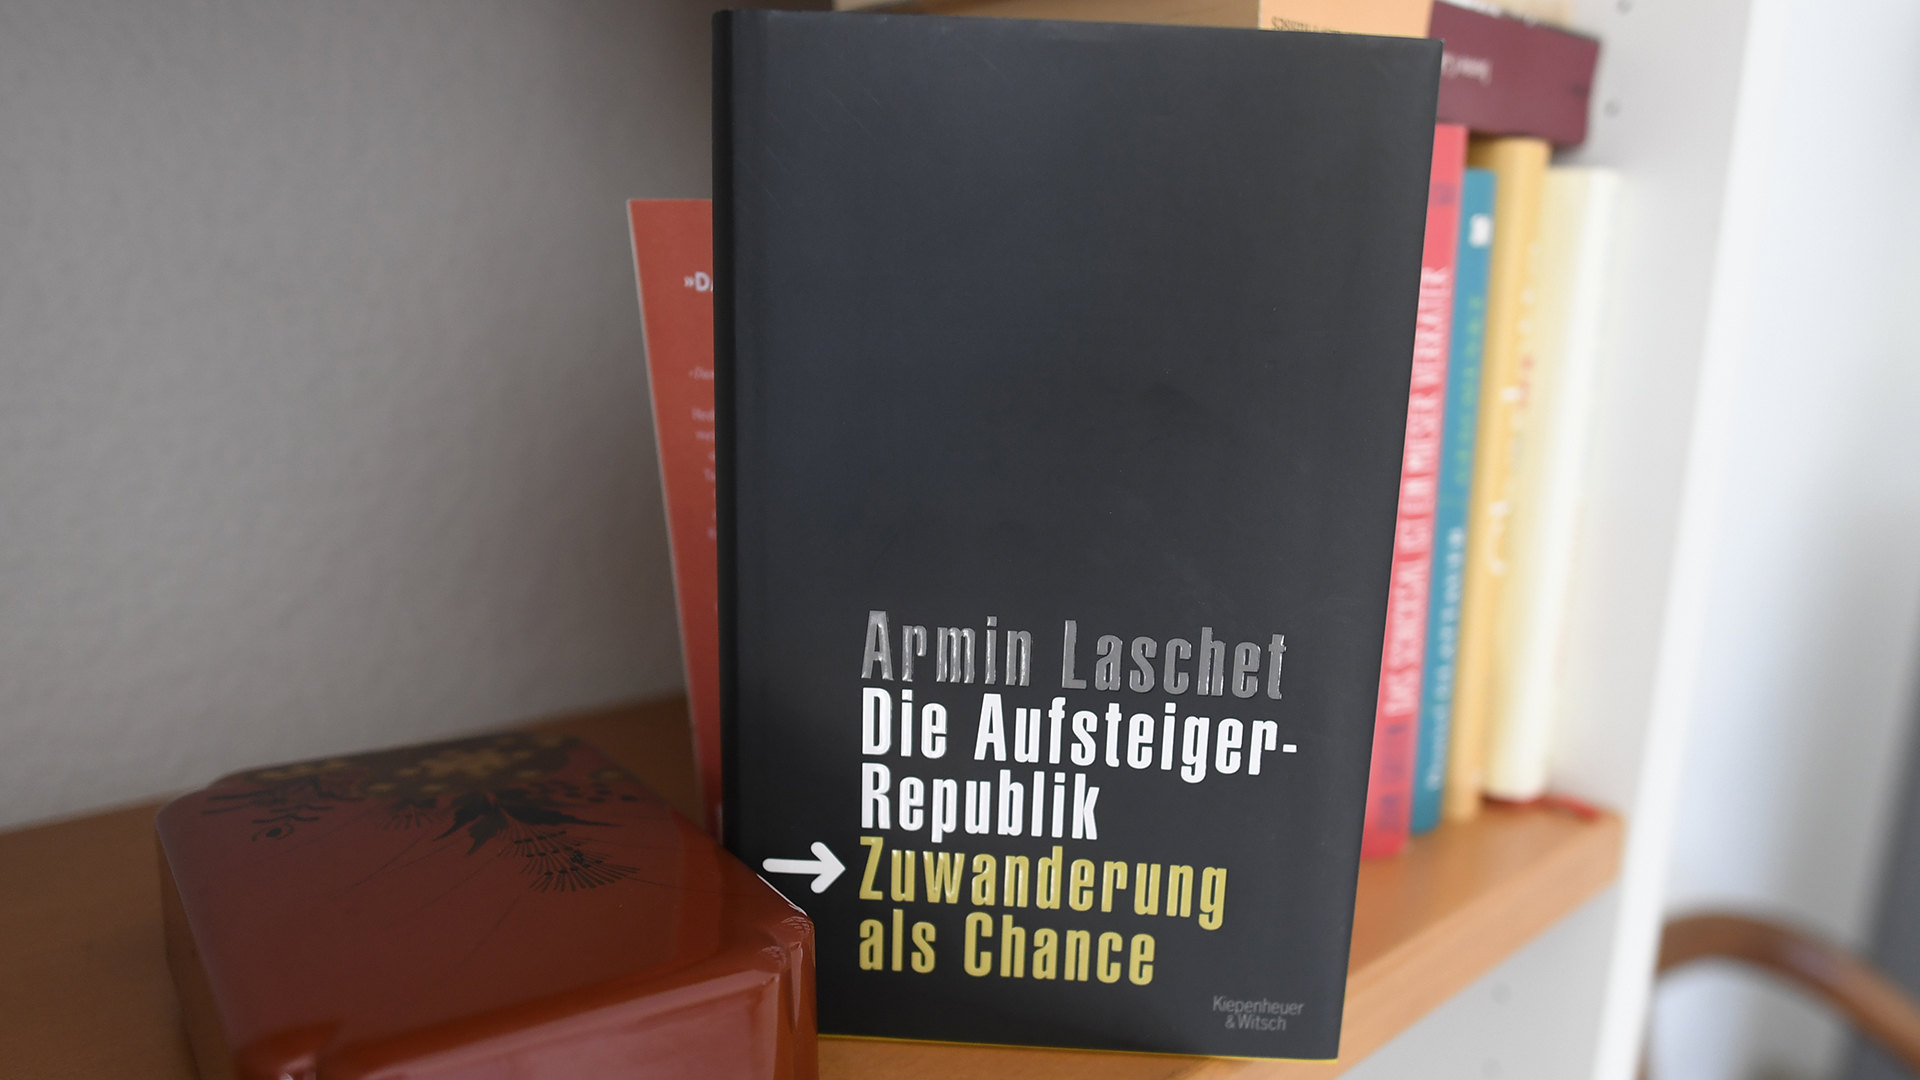 Das Buch von Armin Laschet "Die Aufsteiger Republik-Zuwanderung eine Chance" steht in einem Regal. | dpa